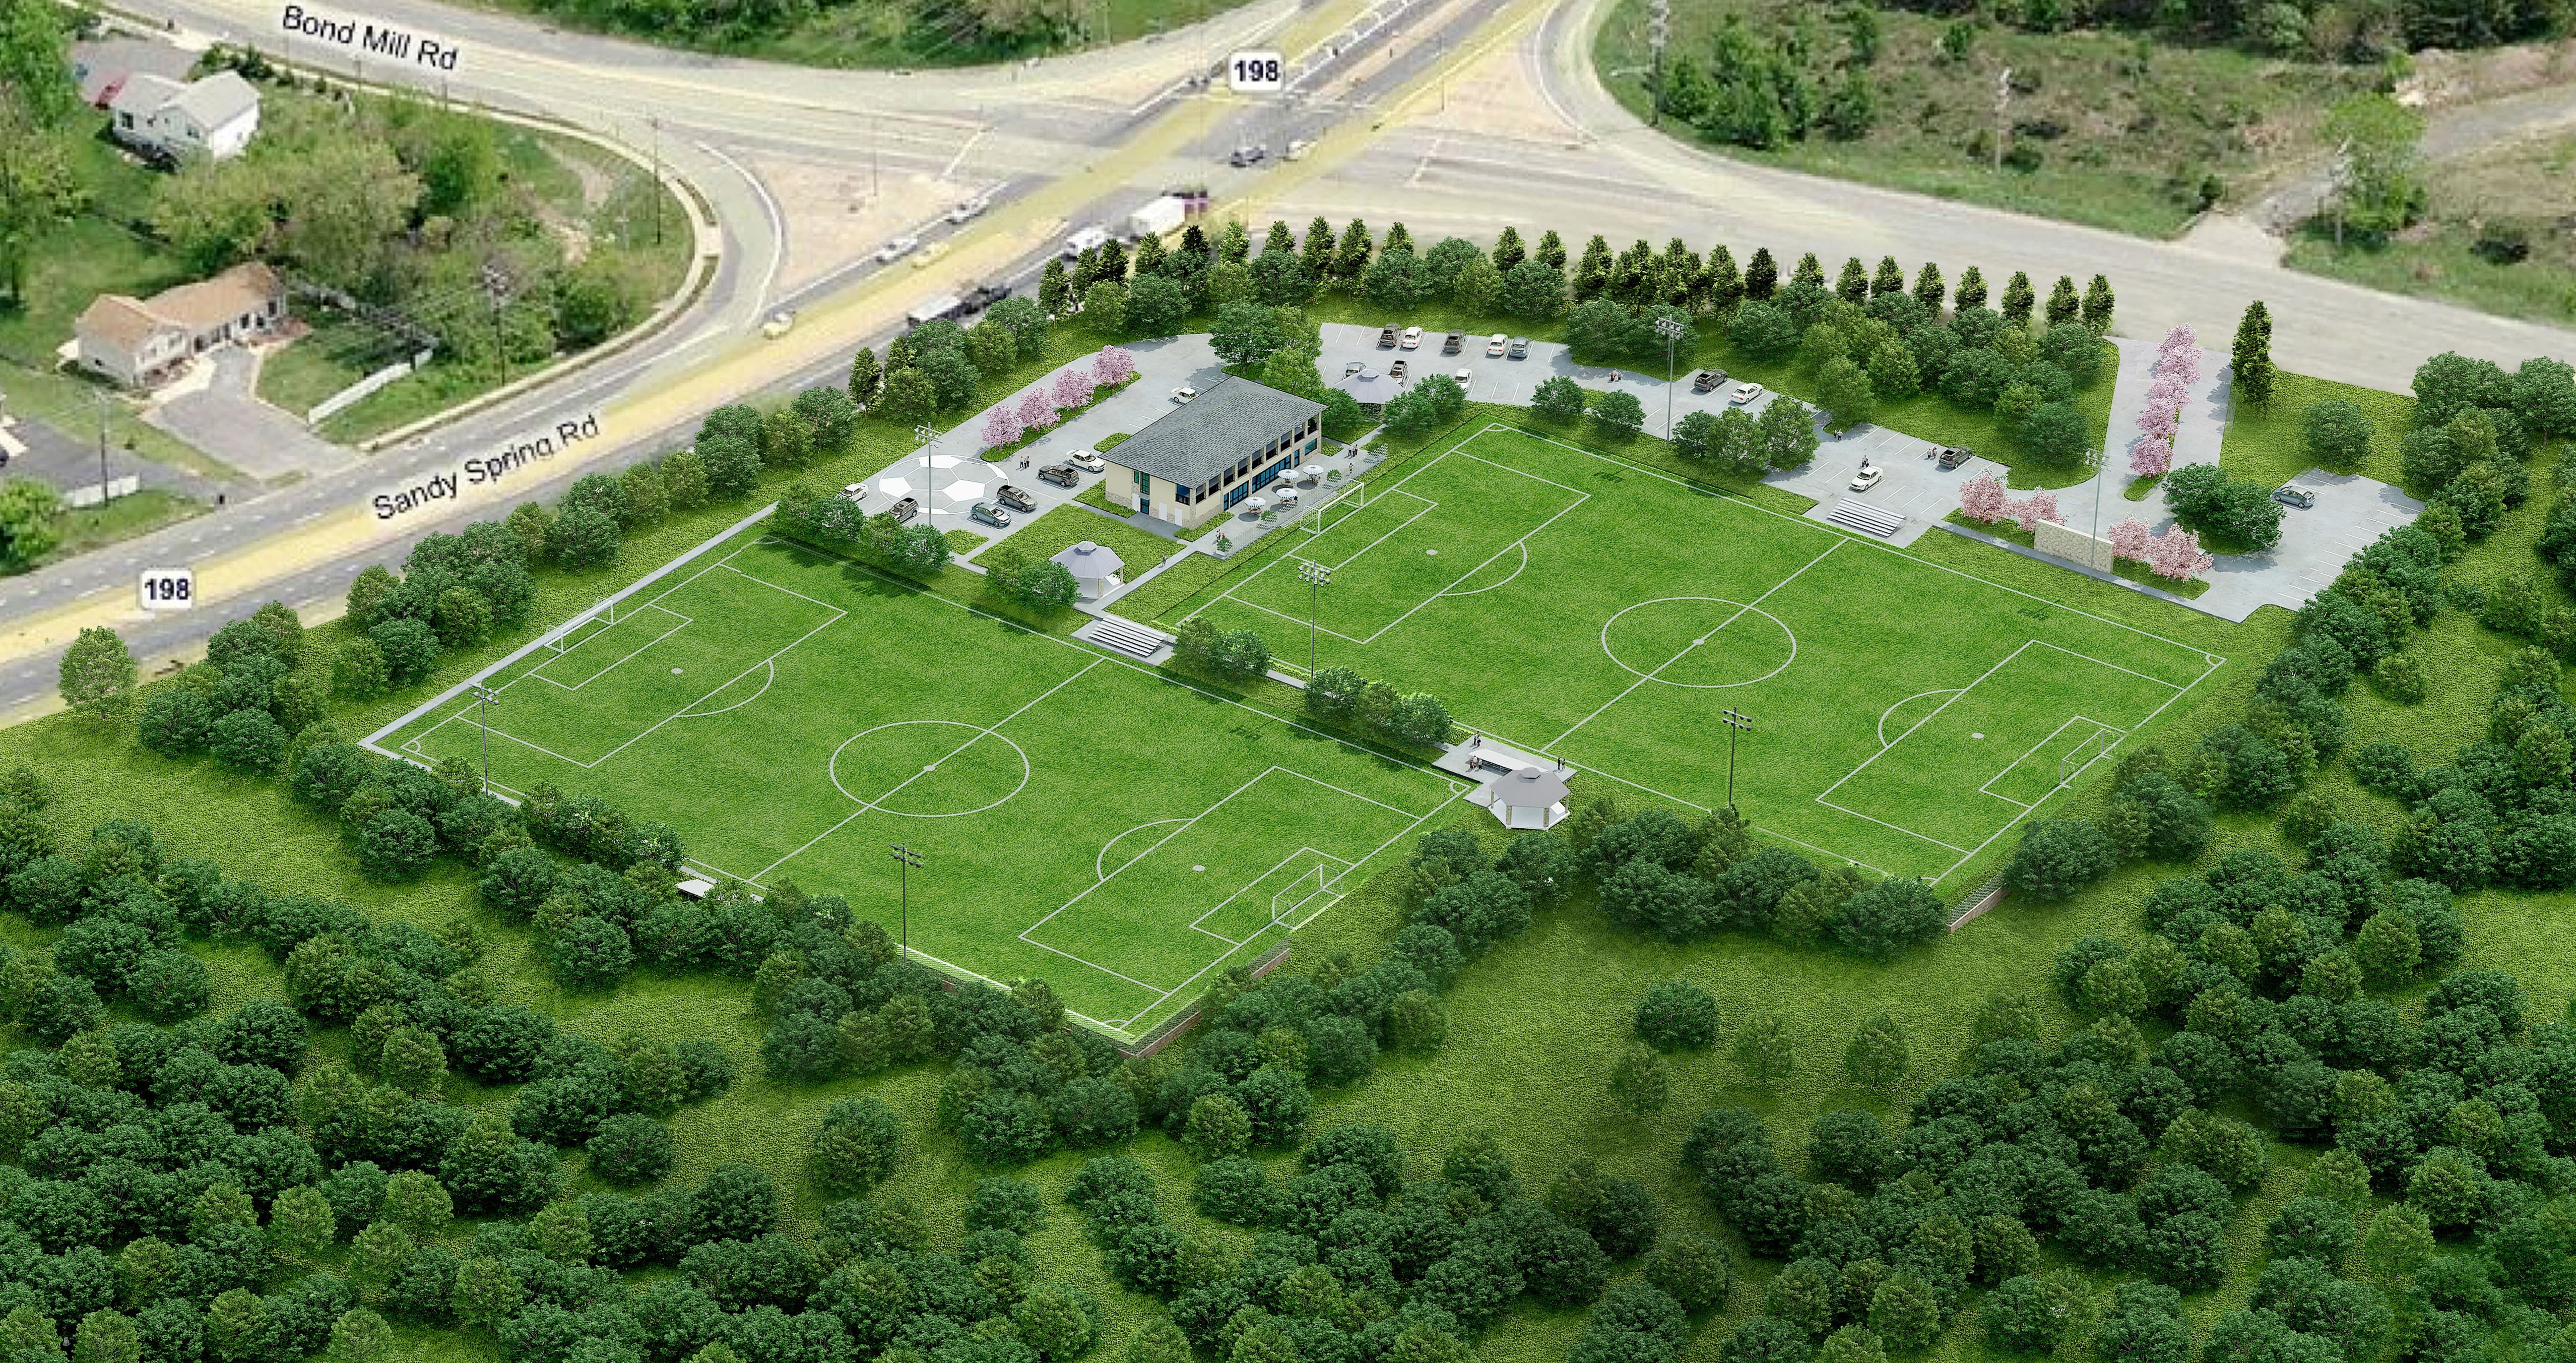 Laurel Soccer Park